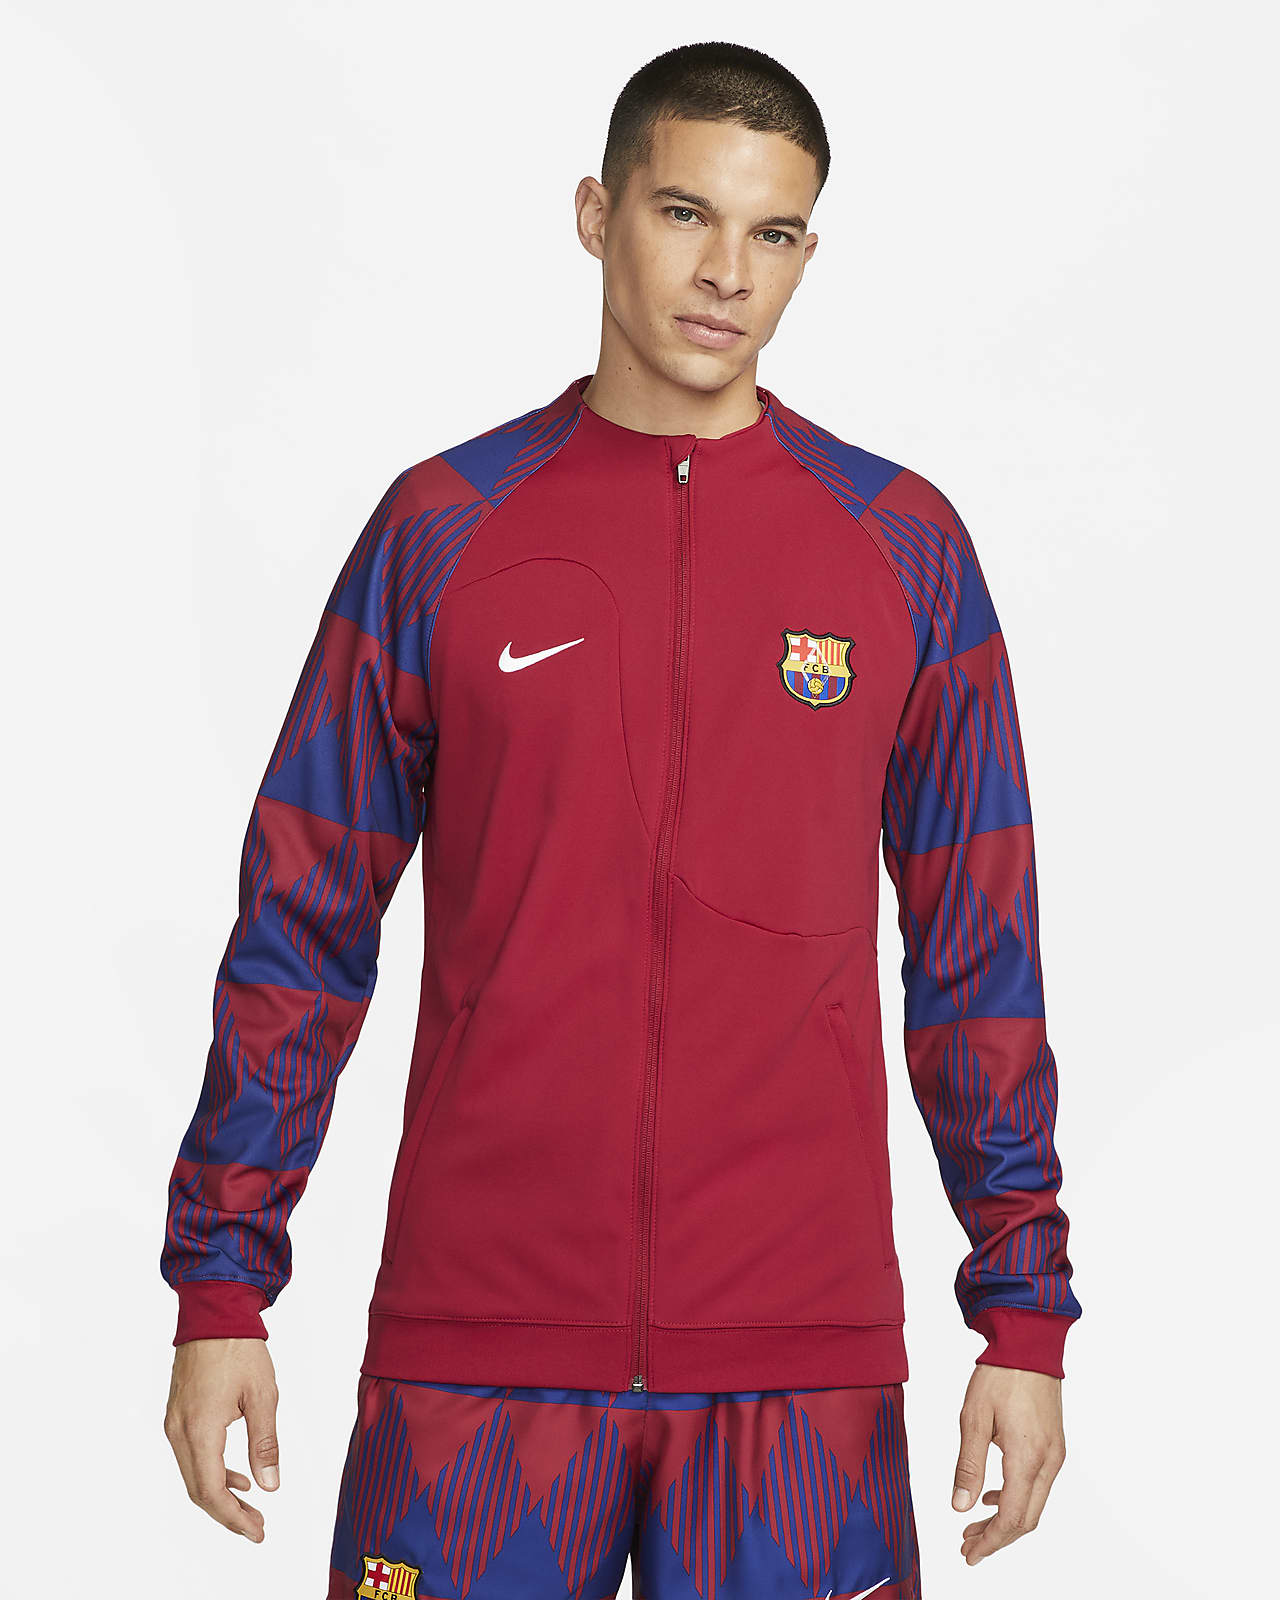 Tech Barça Nike Jacket – Barça Official Store Spotify Camp Nou